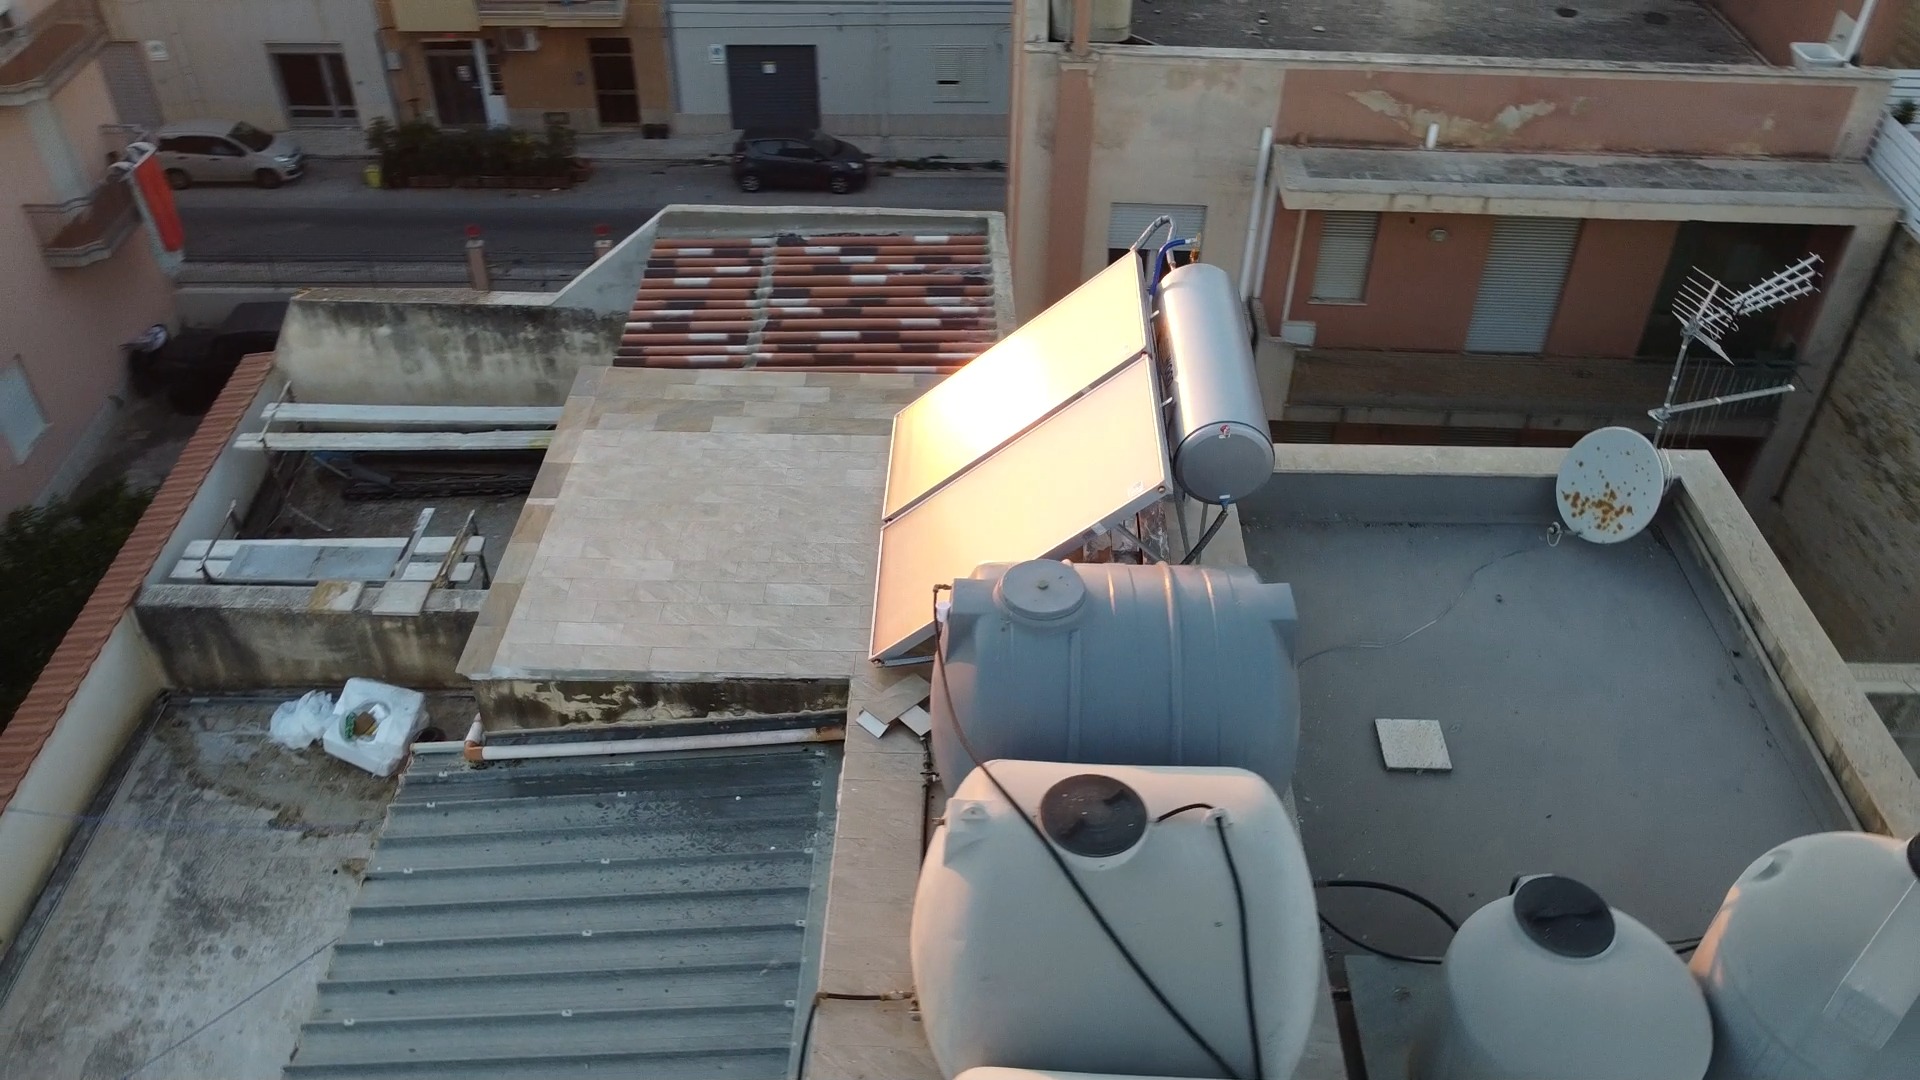 ✅ Nuova installazione Sit Impianti

➡ Impianto #SOLARE #TERMICO 🏠🌞💡

Sfrutta l'energia